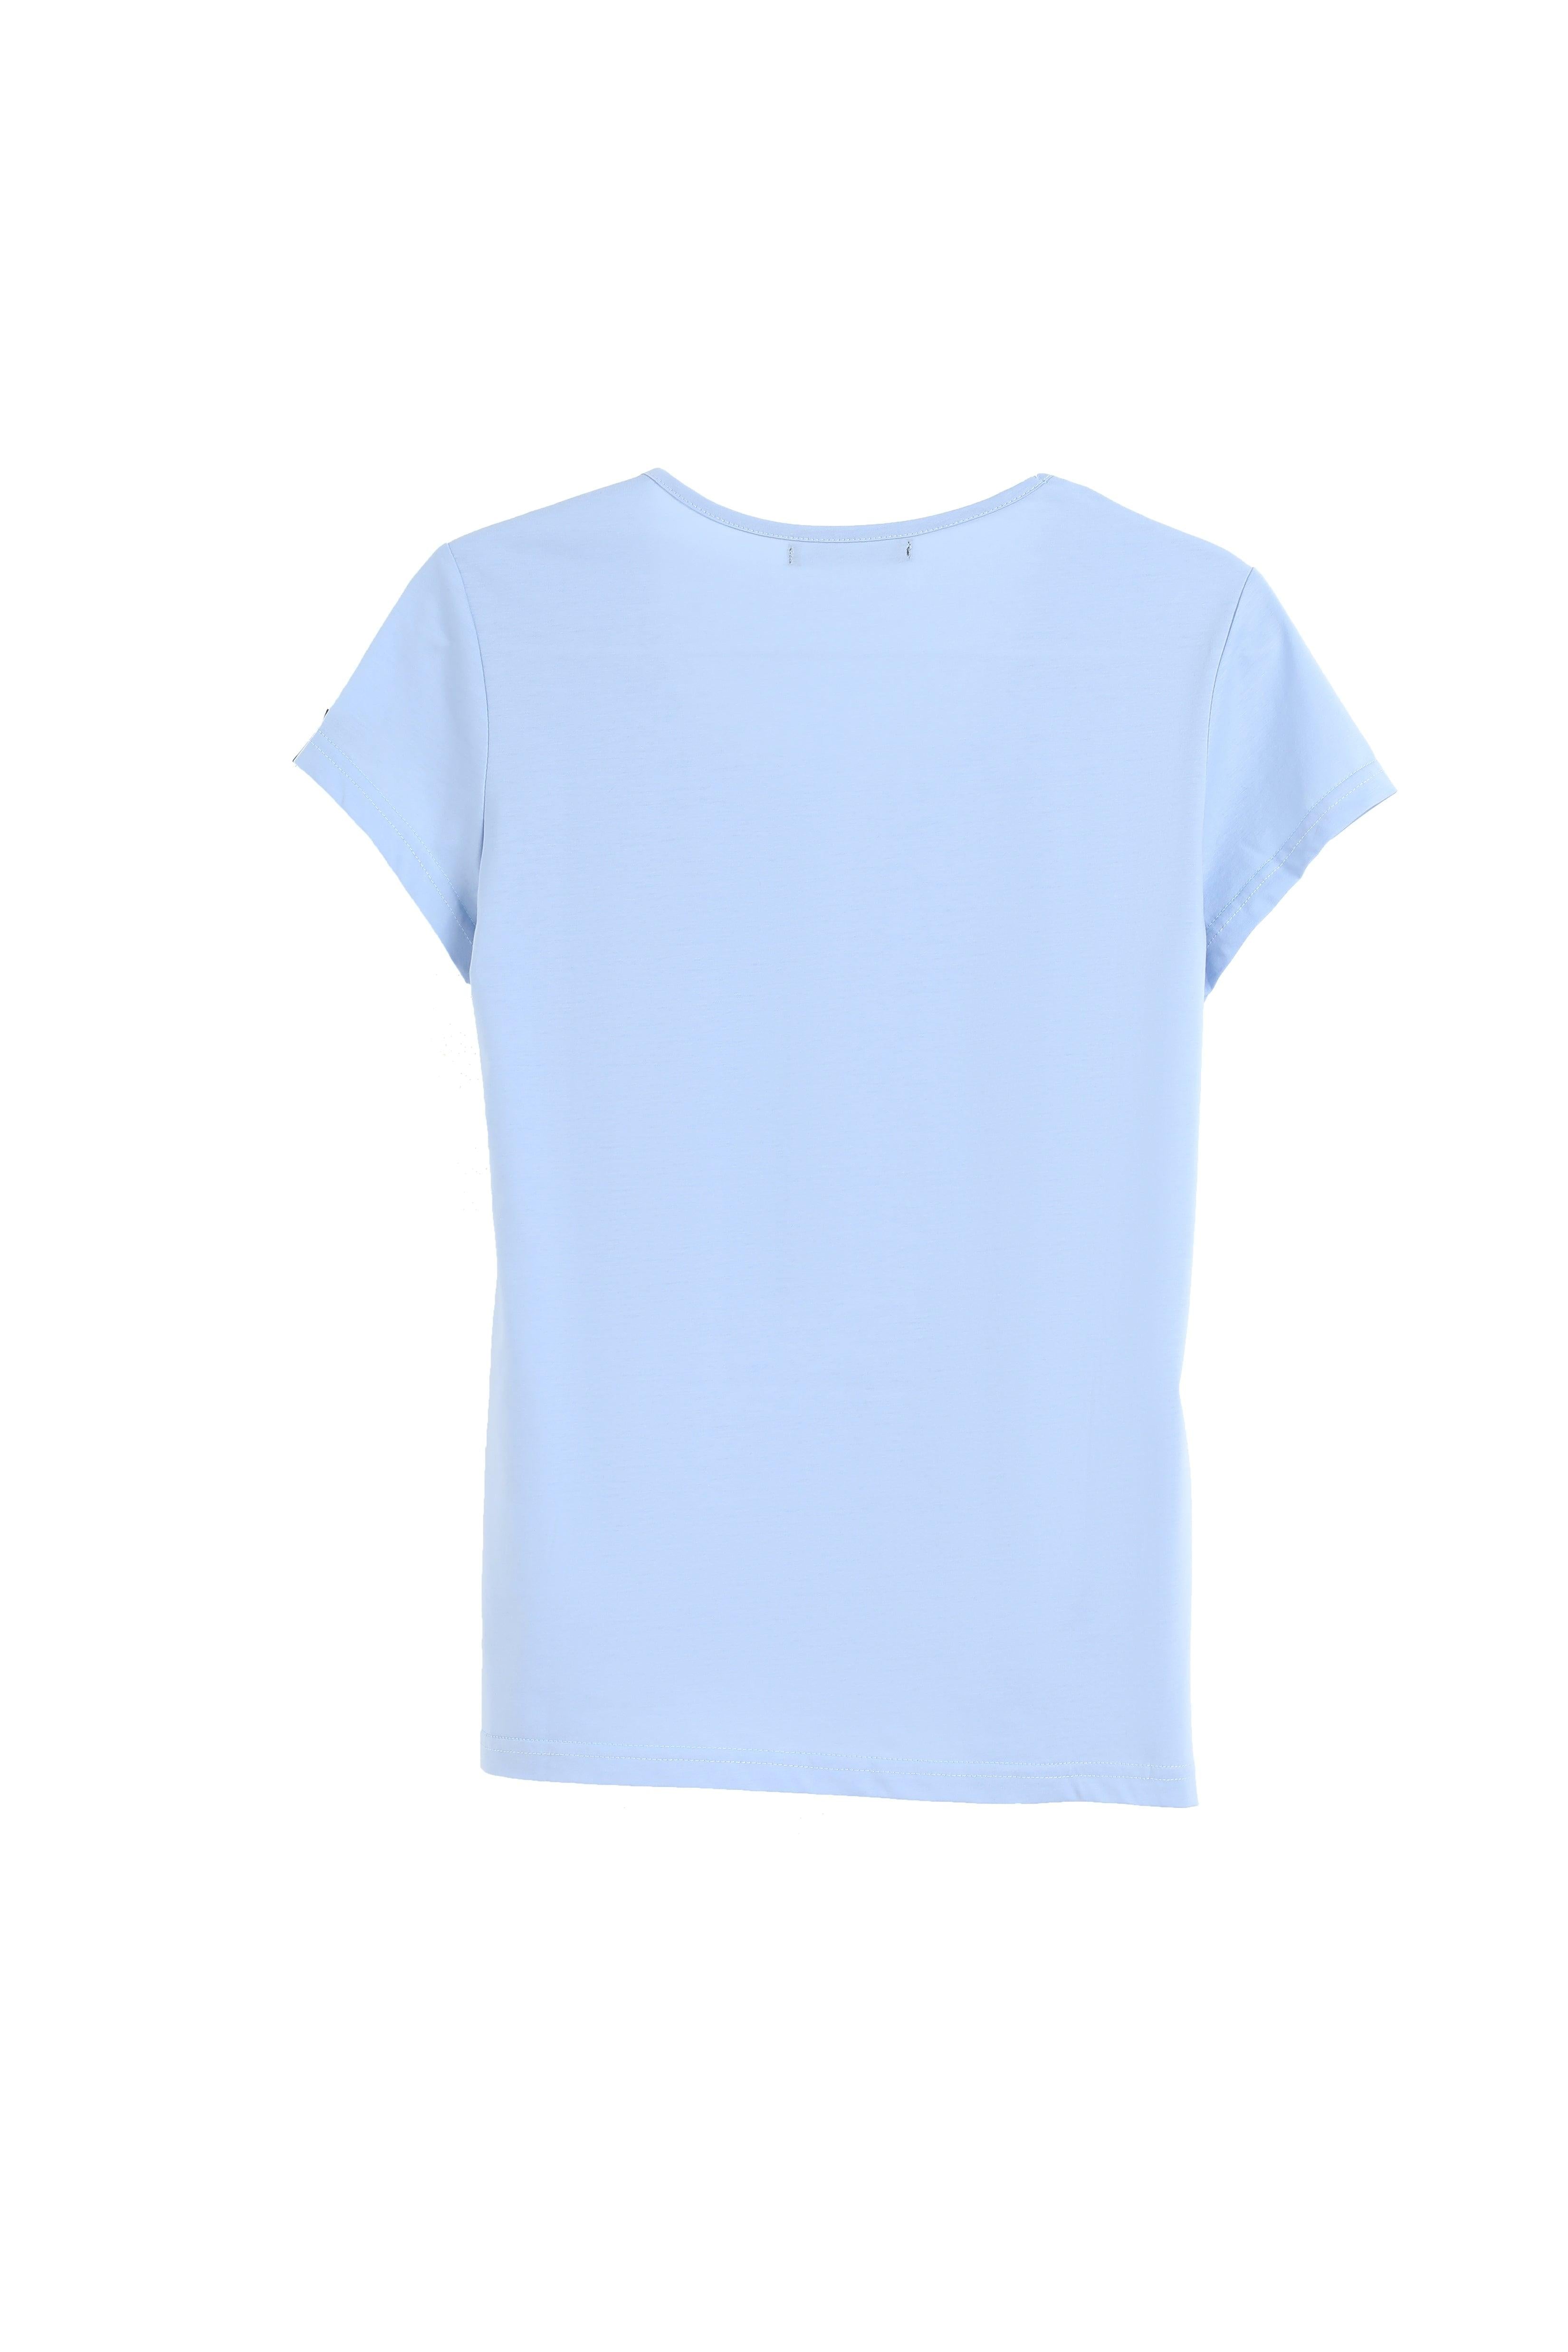 135G Ultra light Deep U Neck Mercerized Cotton Women T-shirt - Bellemere New York 